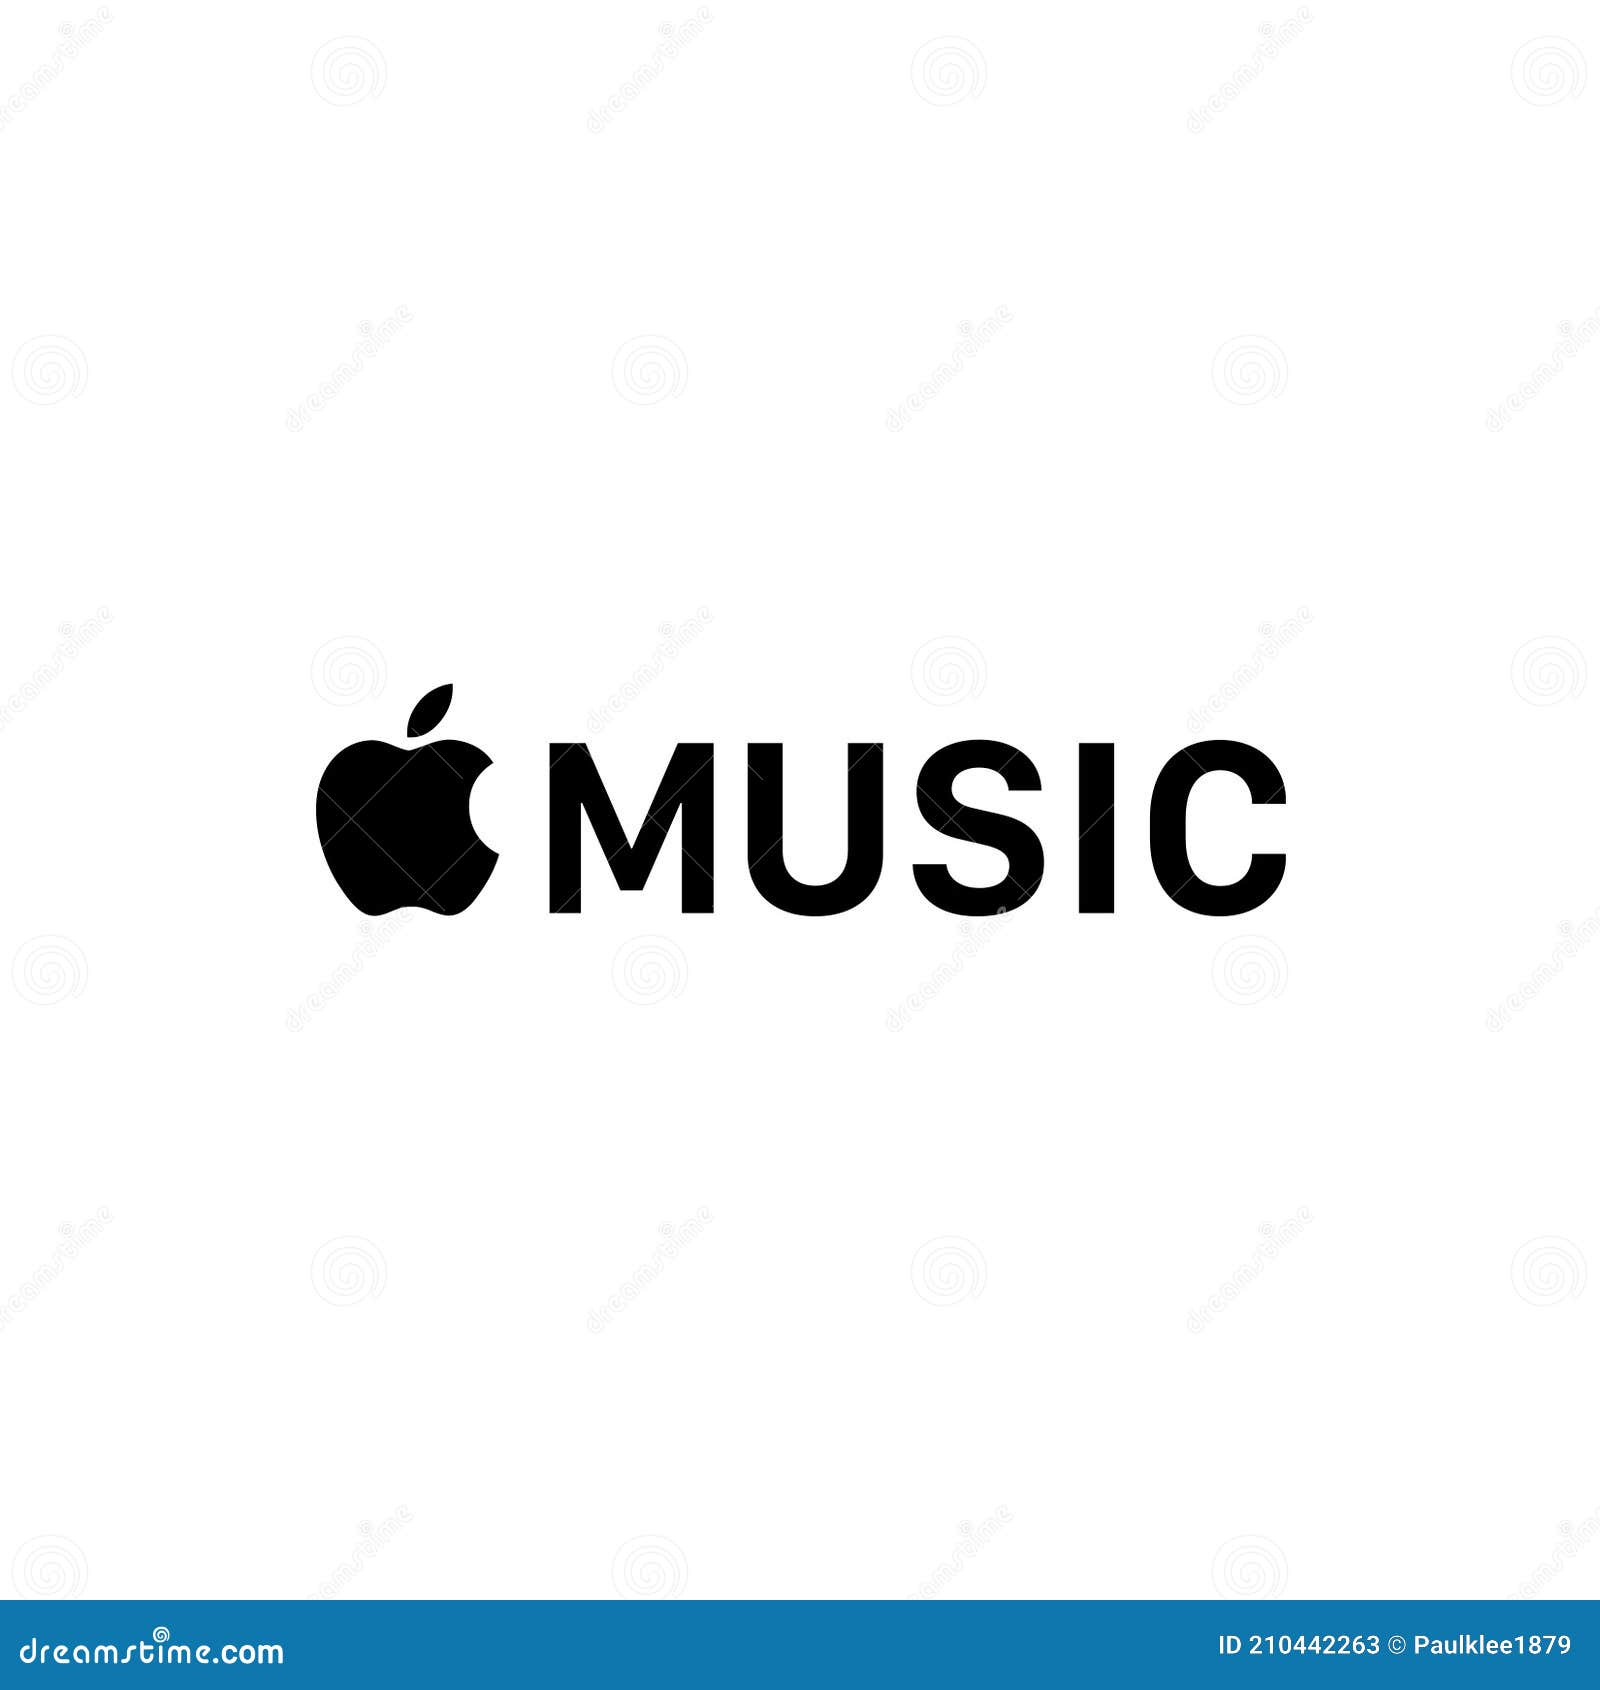 Bạn đã biết về Apple Music Logo chưa? Hãy cùng xem hình ảnh liên quan để hiểu rõ hơn về biểu tượng âm nhạc đình đám này.